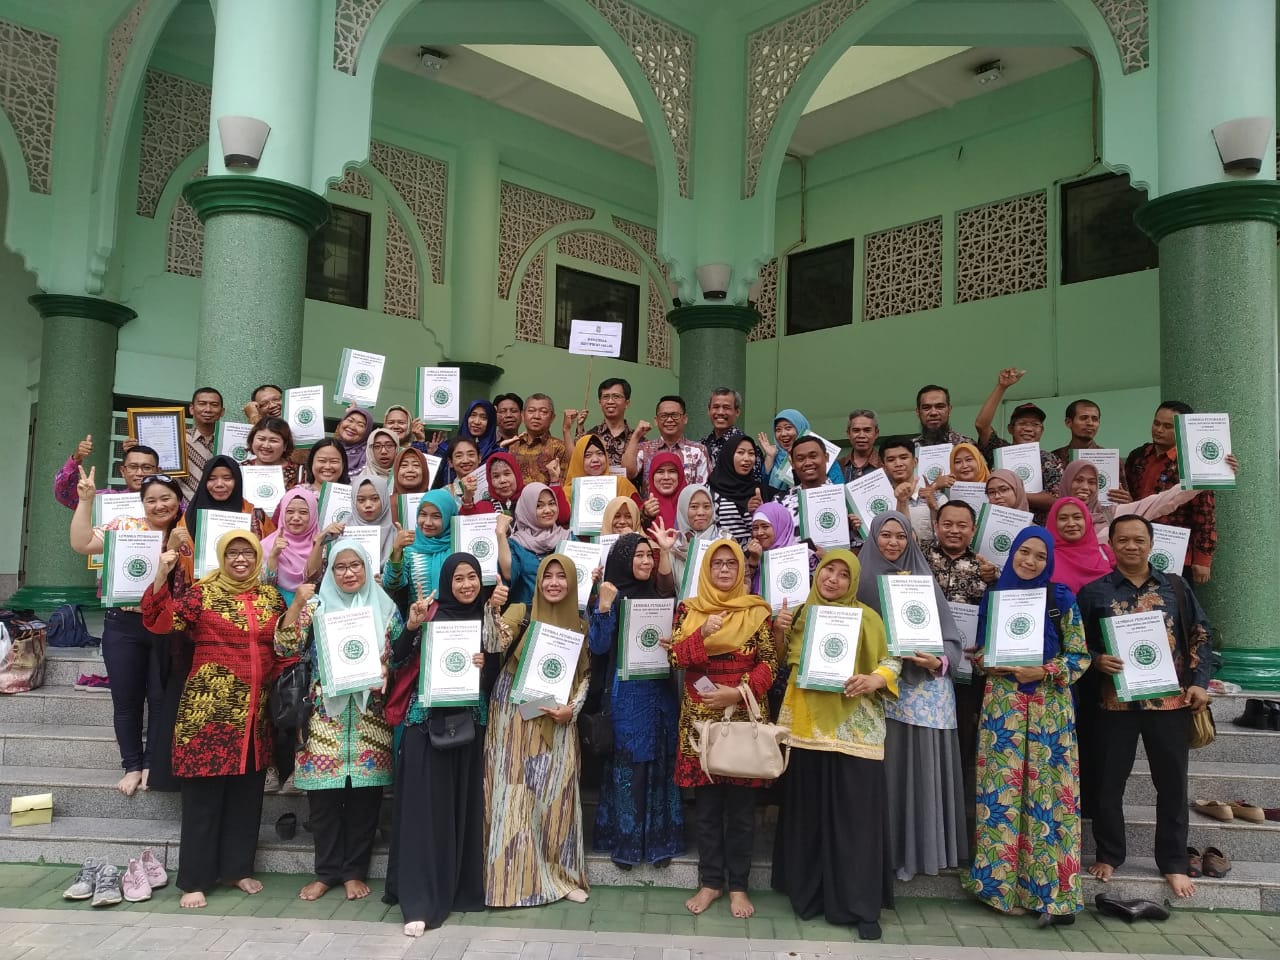 Kuota Terbatas, Ini Syarat Daftar Sertifikasi Halal Gratis untuk IKM di Kota Tangerang